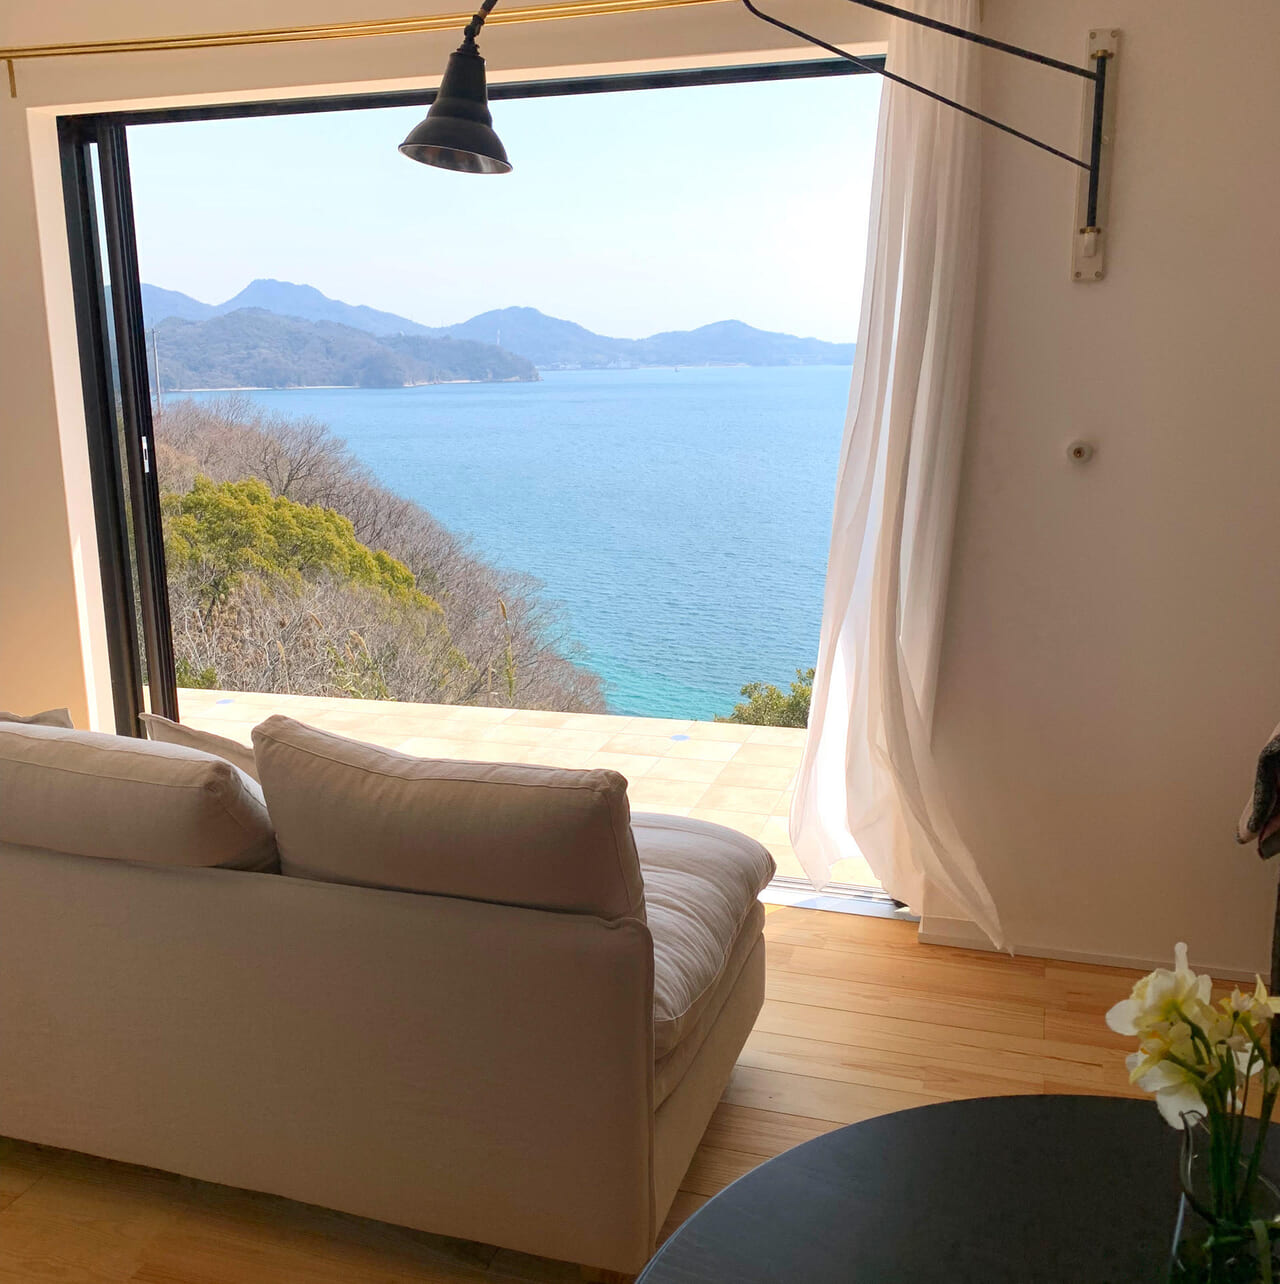 大三島の美しさとこだわりの設備や眺めを楽しむことができる宿泊施設「Yu-Rah」がオープンしました!!